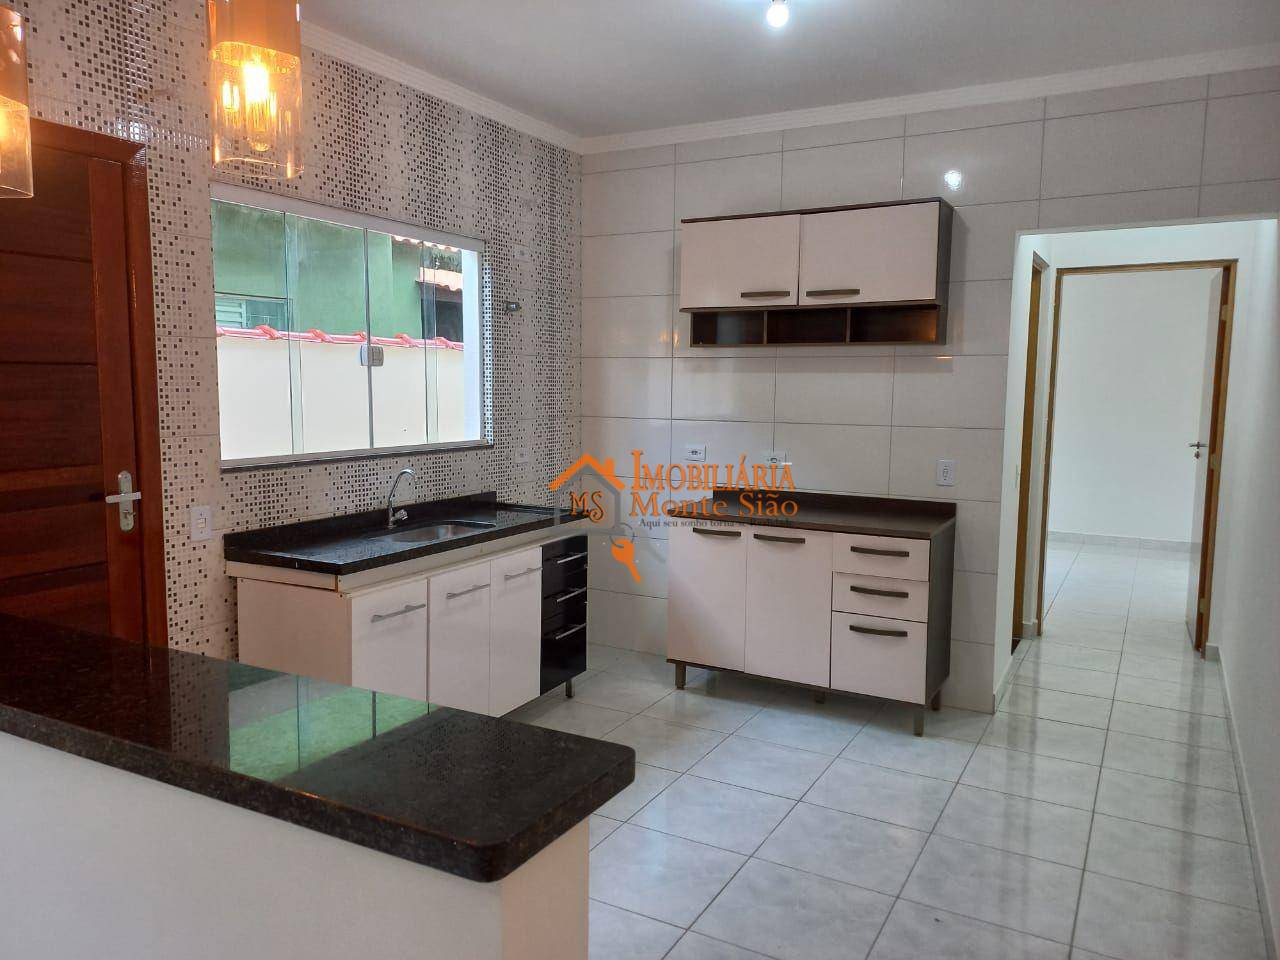 Casa com 2 dormitórios à venda, 64 m² por R$ 360.000,00 - Jardim Rio Negro - Itaquaquecetuba/SP